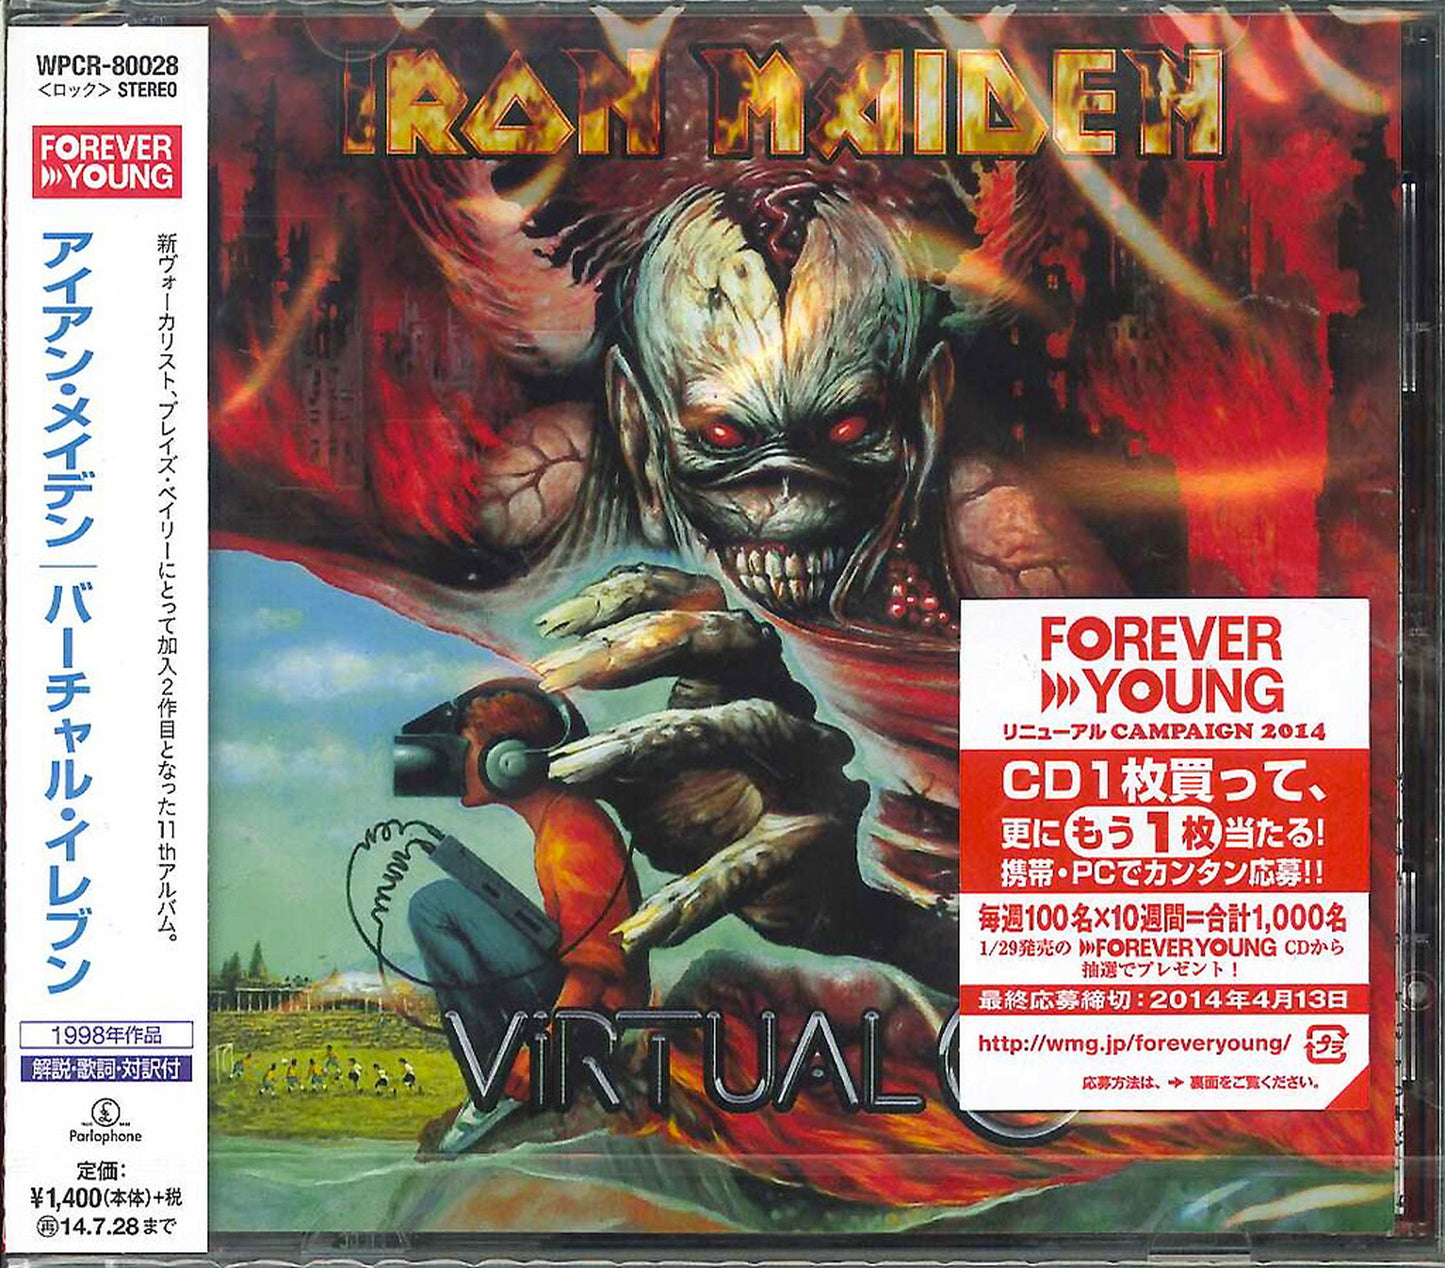 Iron Maiden - Virtual 11 - Japan CD